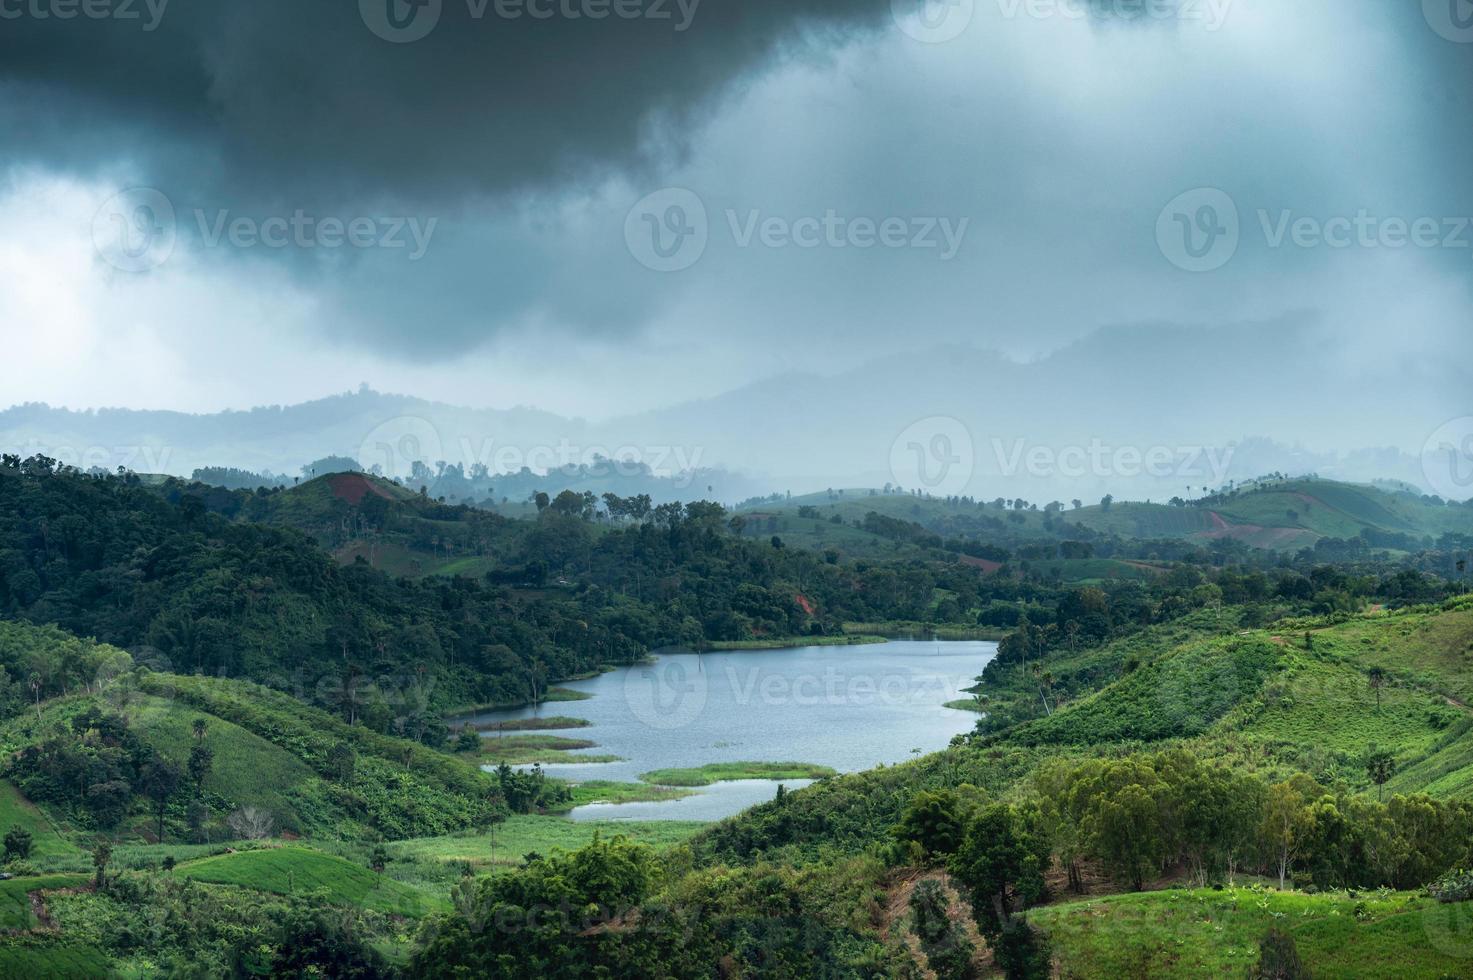 regenbui op berg en meer in regenwoud bij nationaal park foto